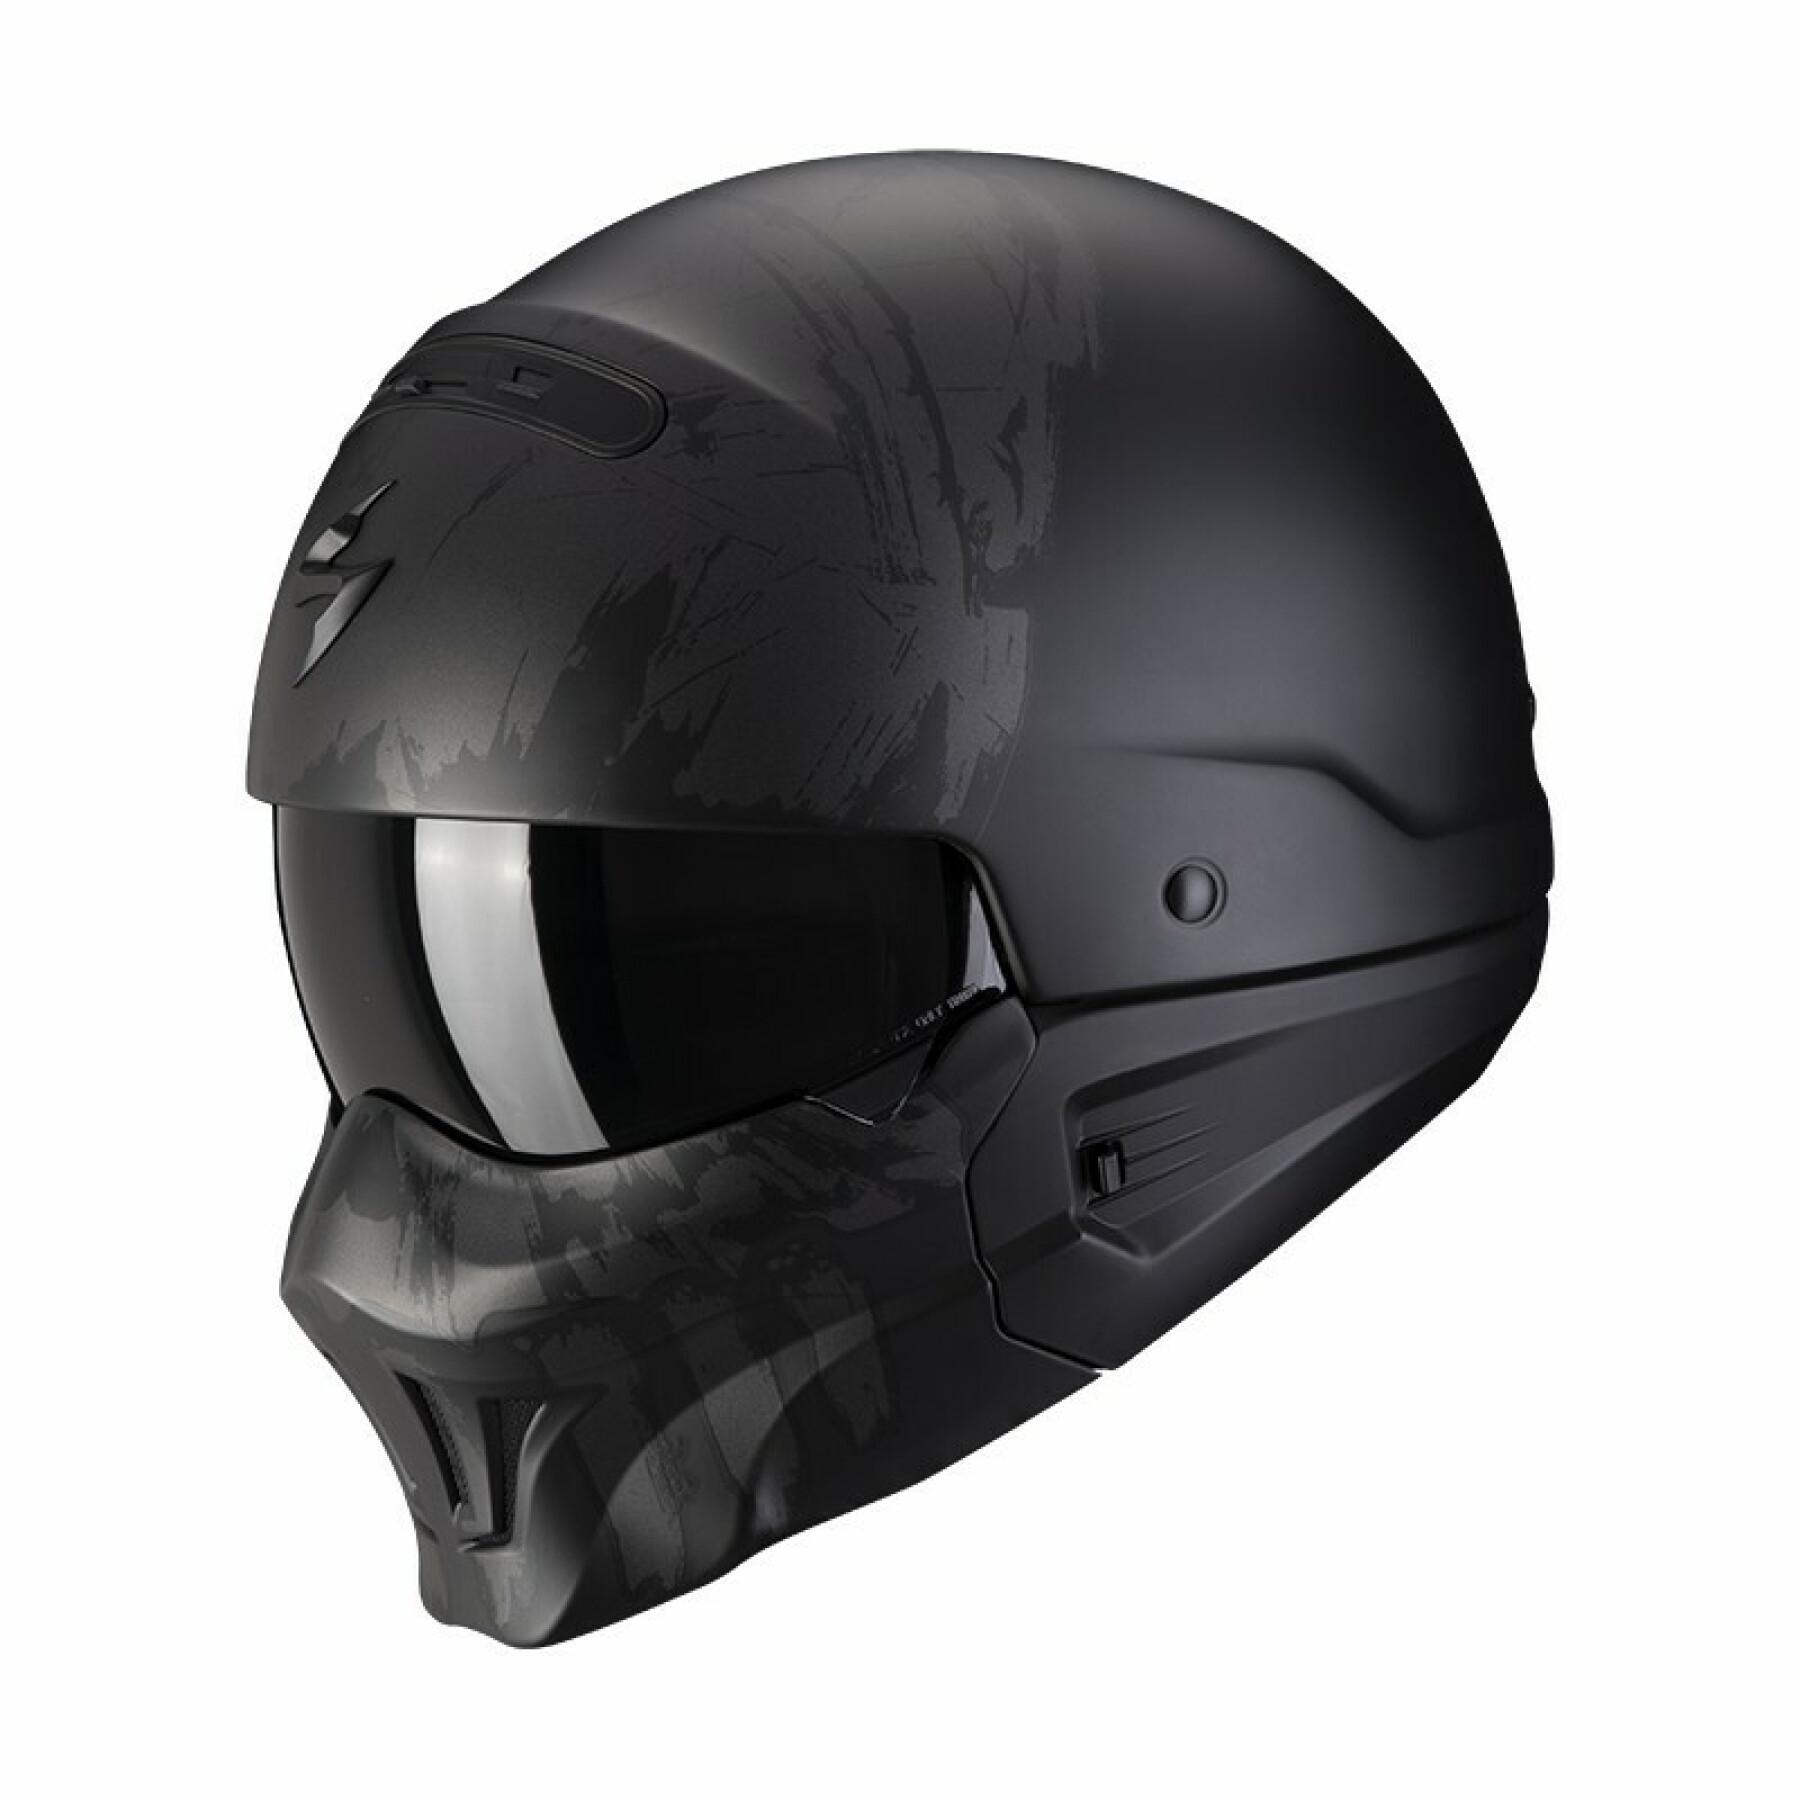 Modular helmet Scorpion Exo-Combat evo MARAUDER